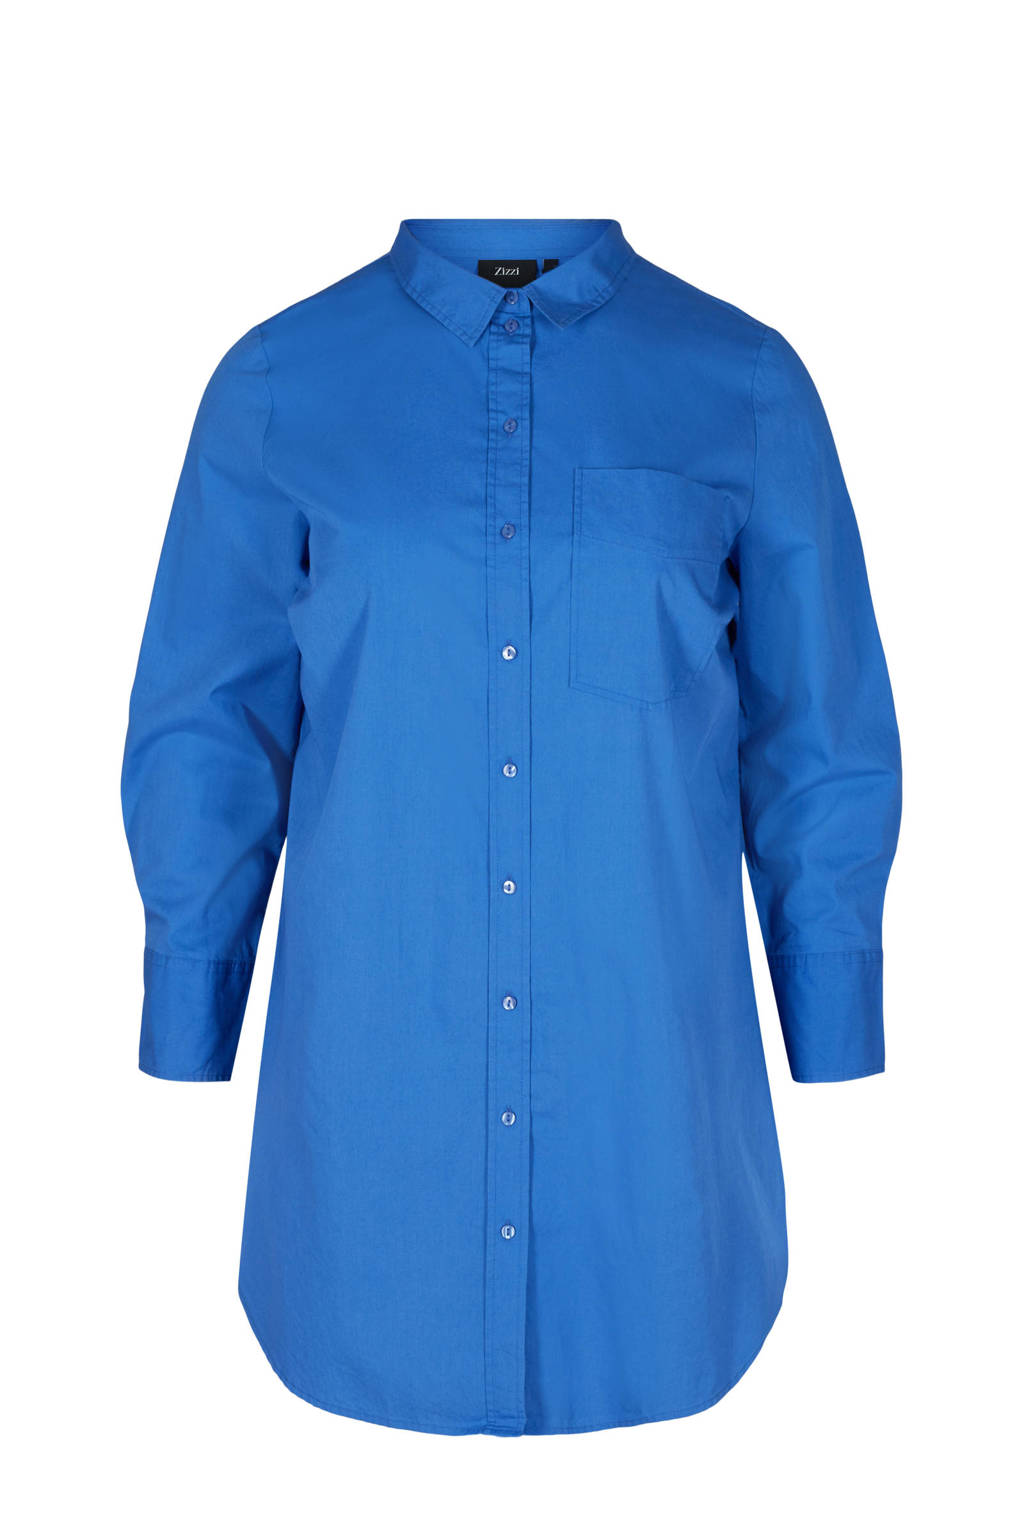 Blauwe dames Zizzi blouse van biologisch katoen met lange mouwen, klassieke kraag en knoopsluiting